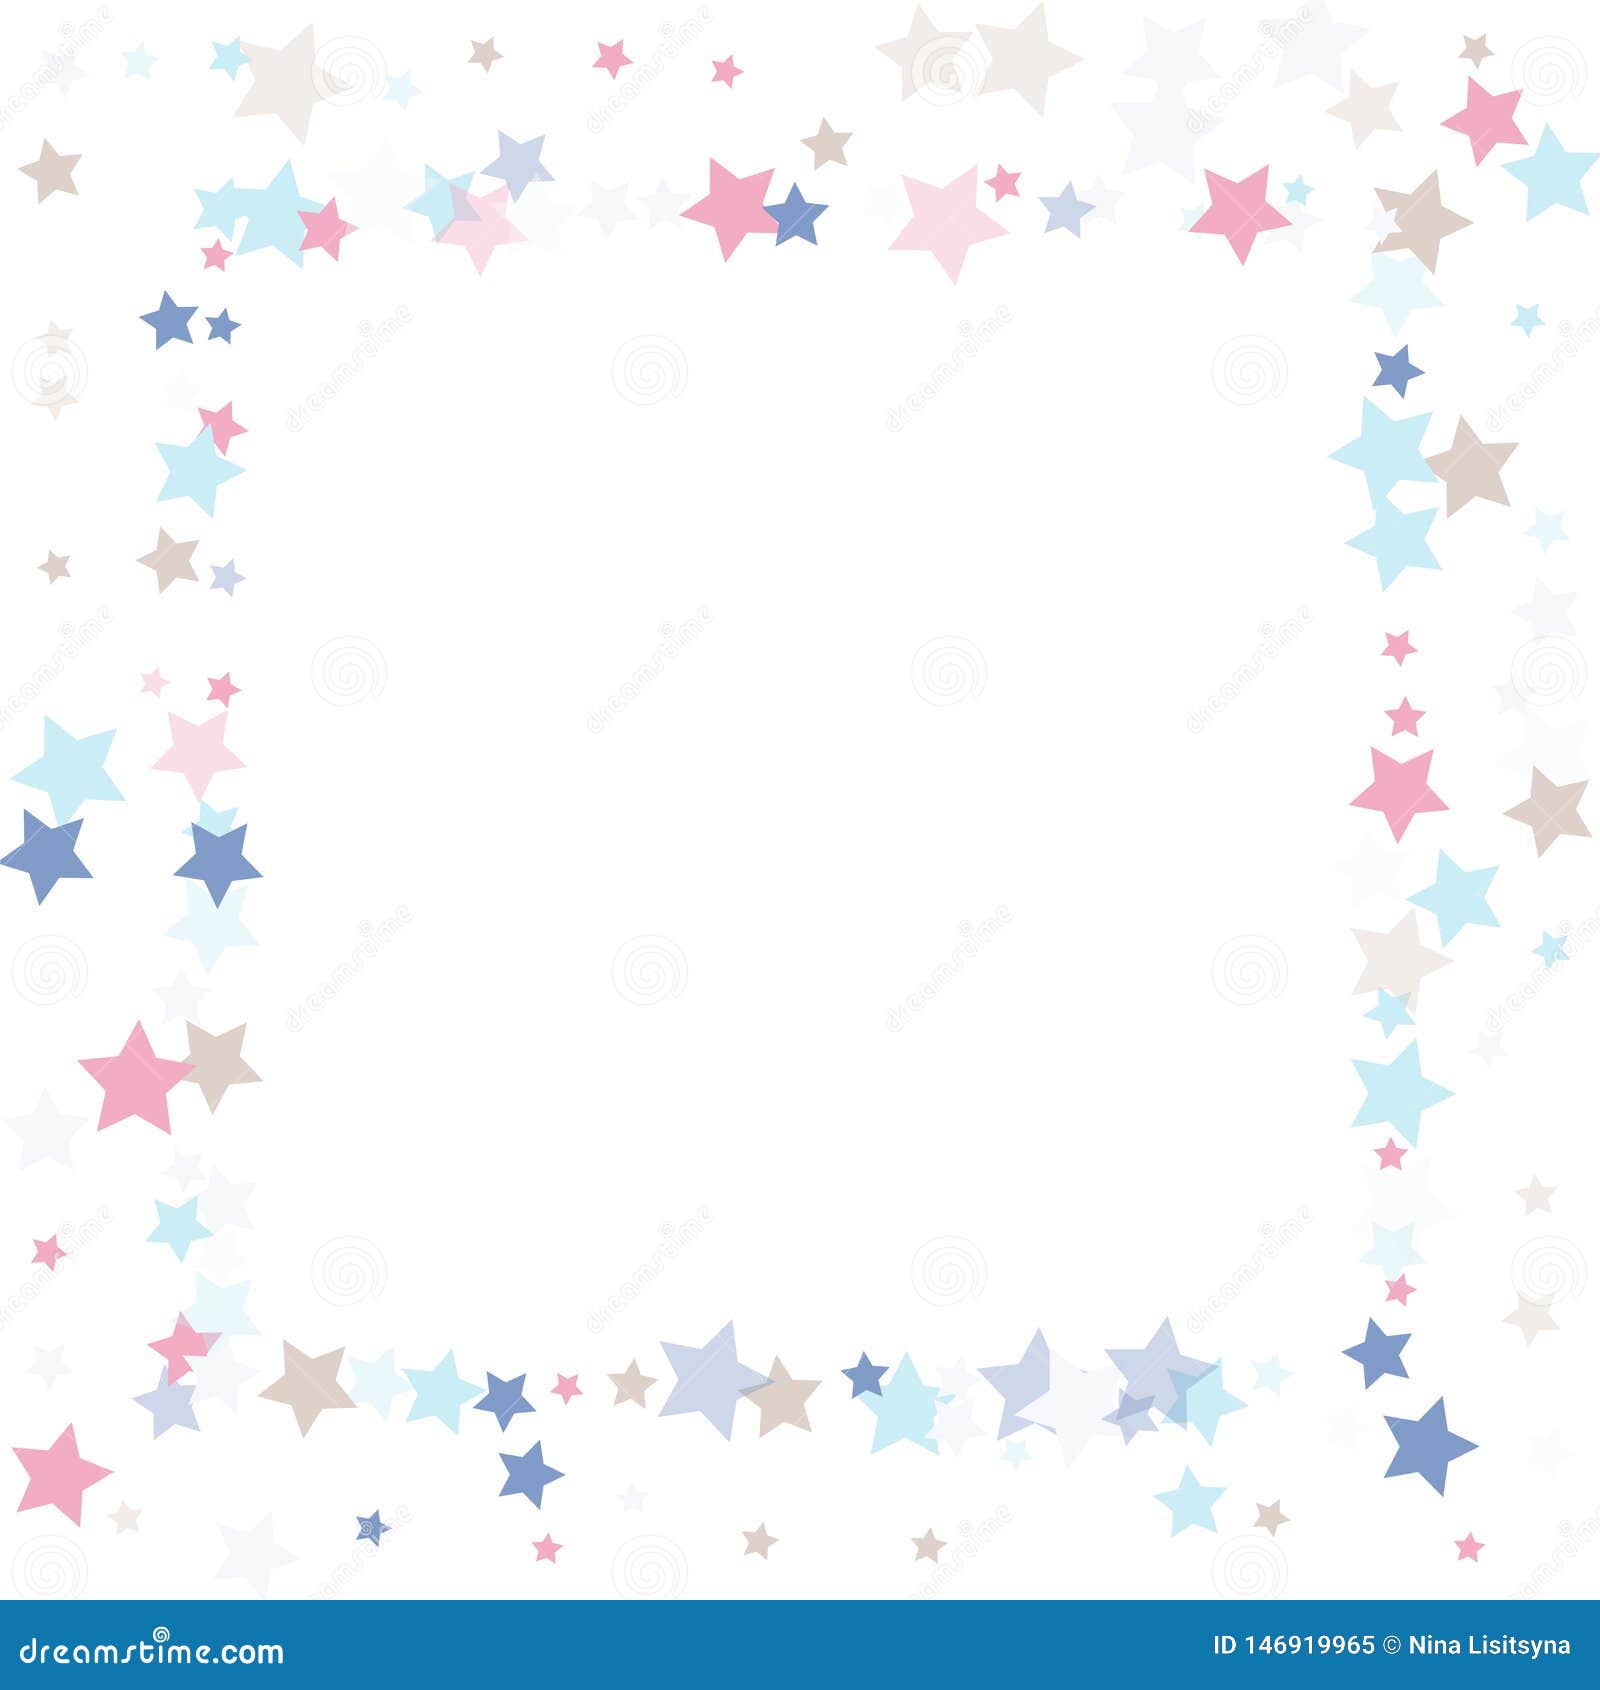 Multicolored Falling Stars of Confetti. Stock Vector - Illustration of ...